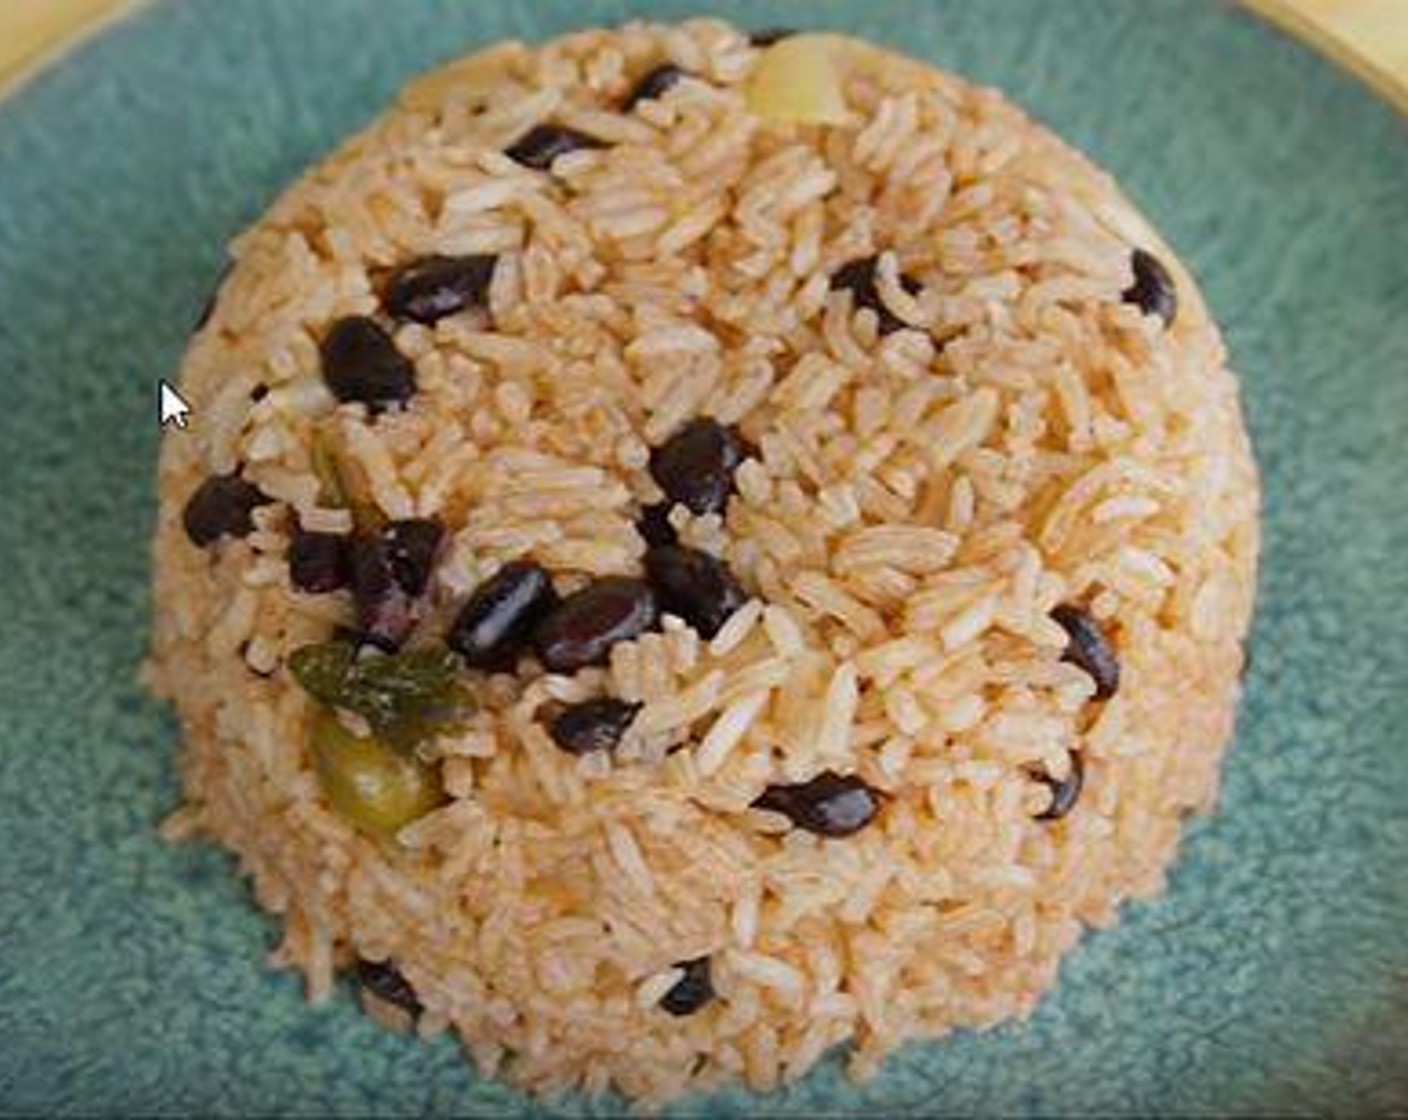 Dominican Rice and Beans - Moro de Habichuela Negras